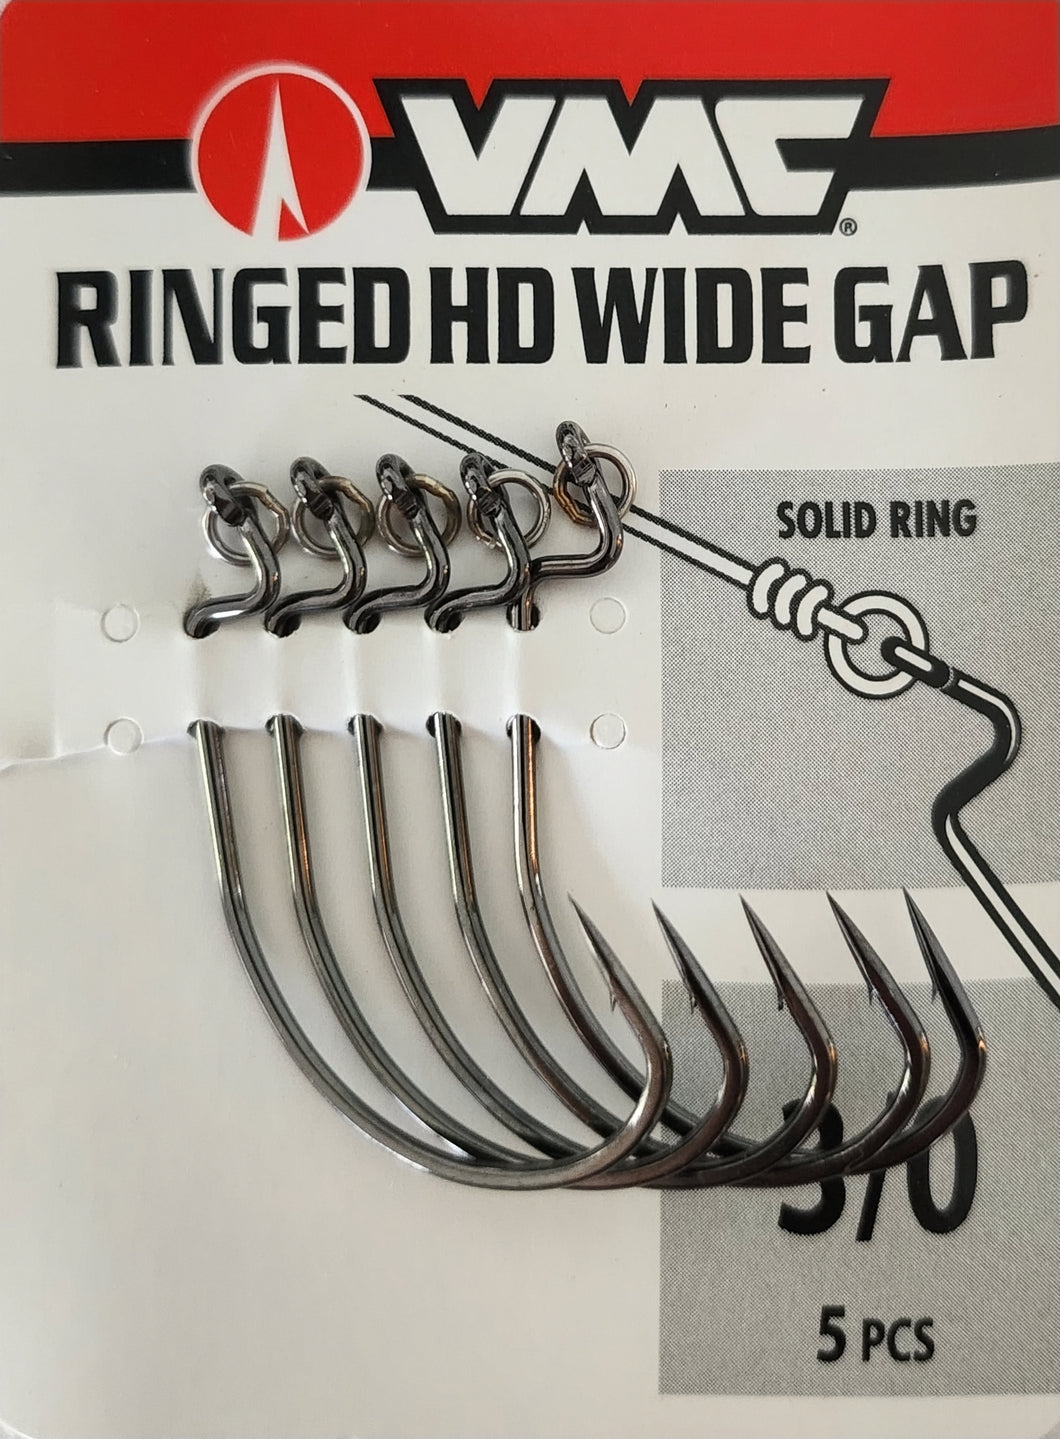 VMC Ringed HD Wide gap 3/0